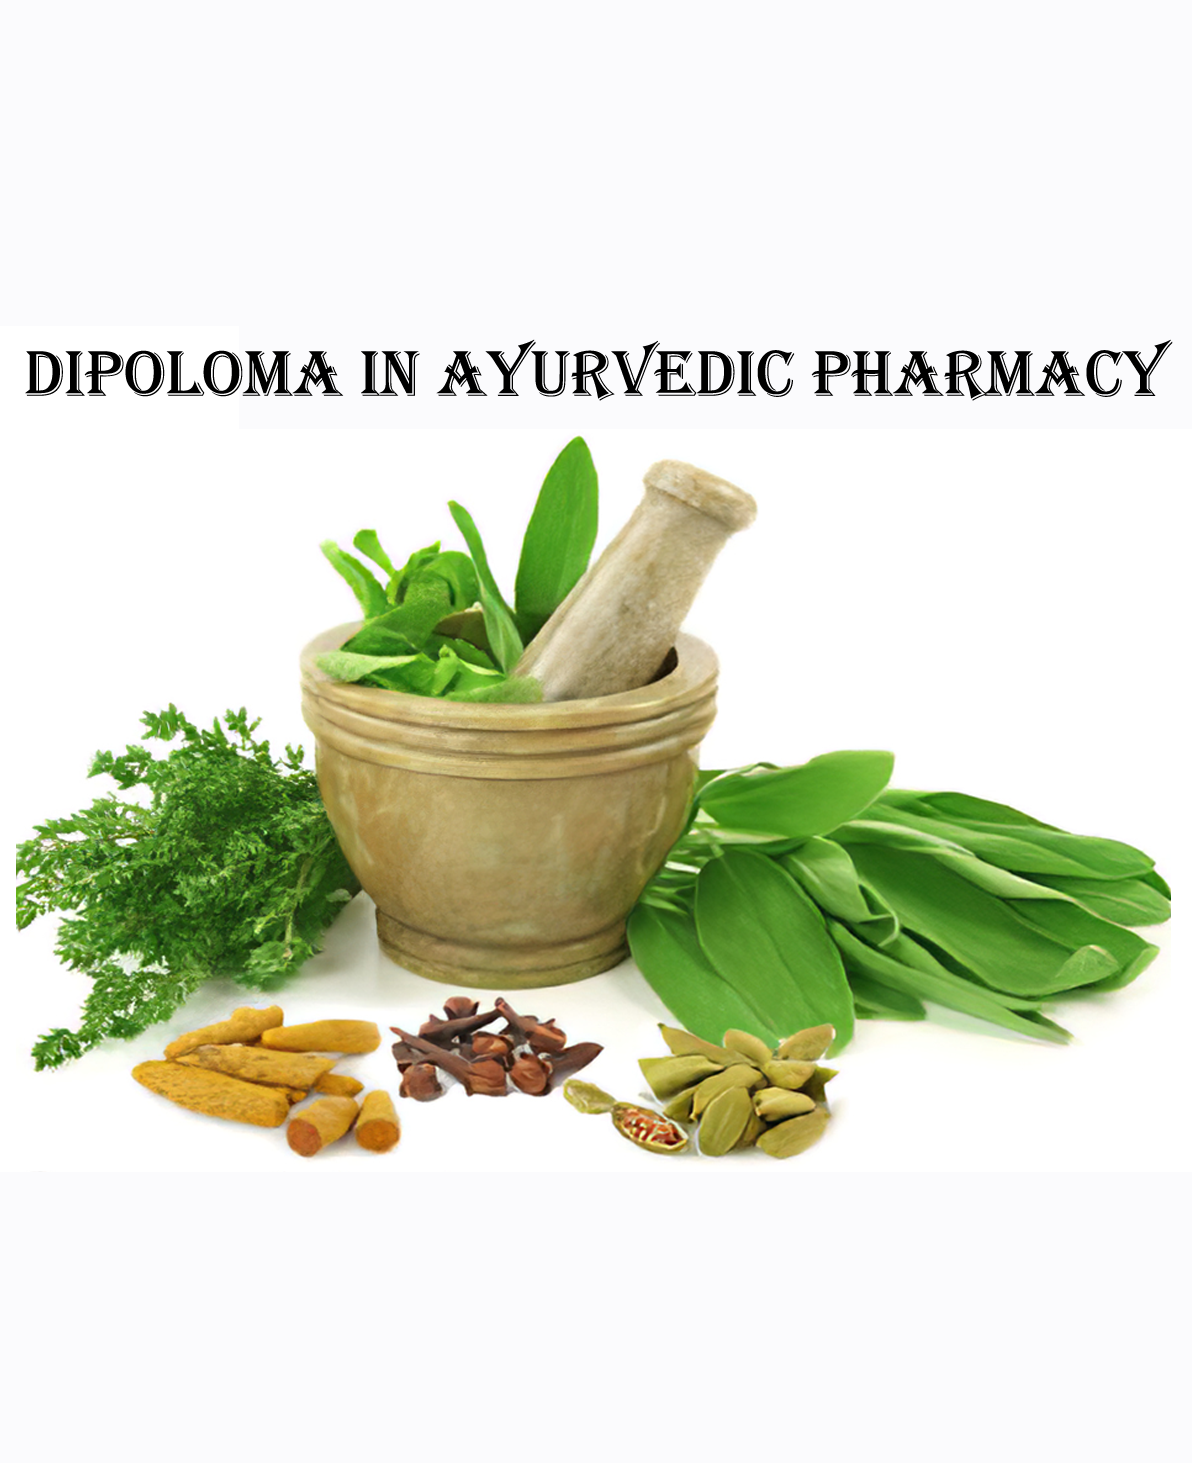 Diploma in Ayurvedic Pharmacy